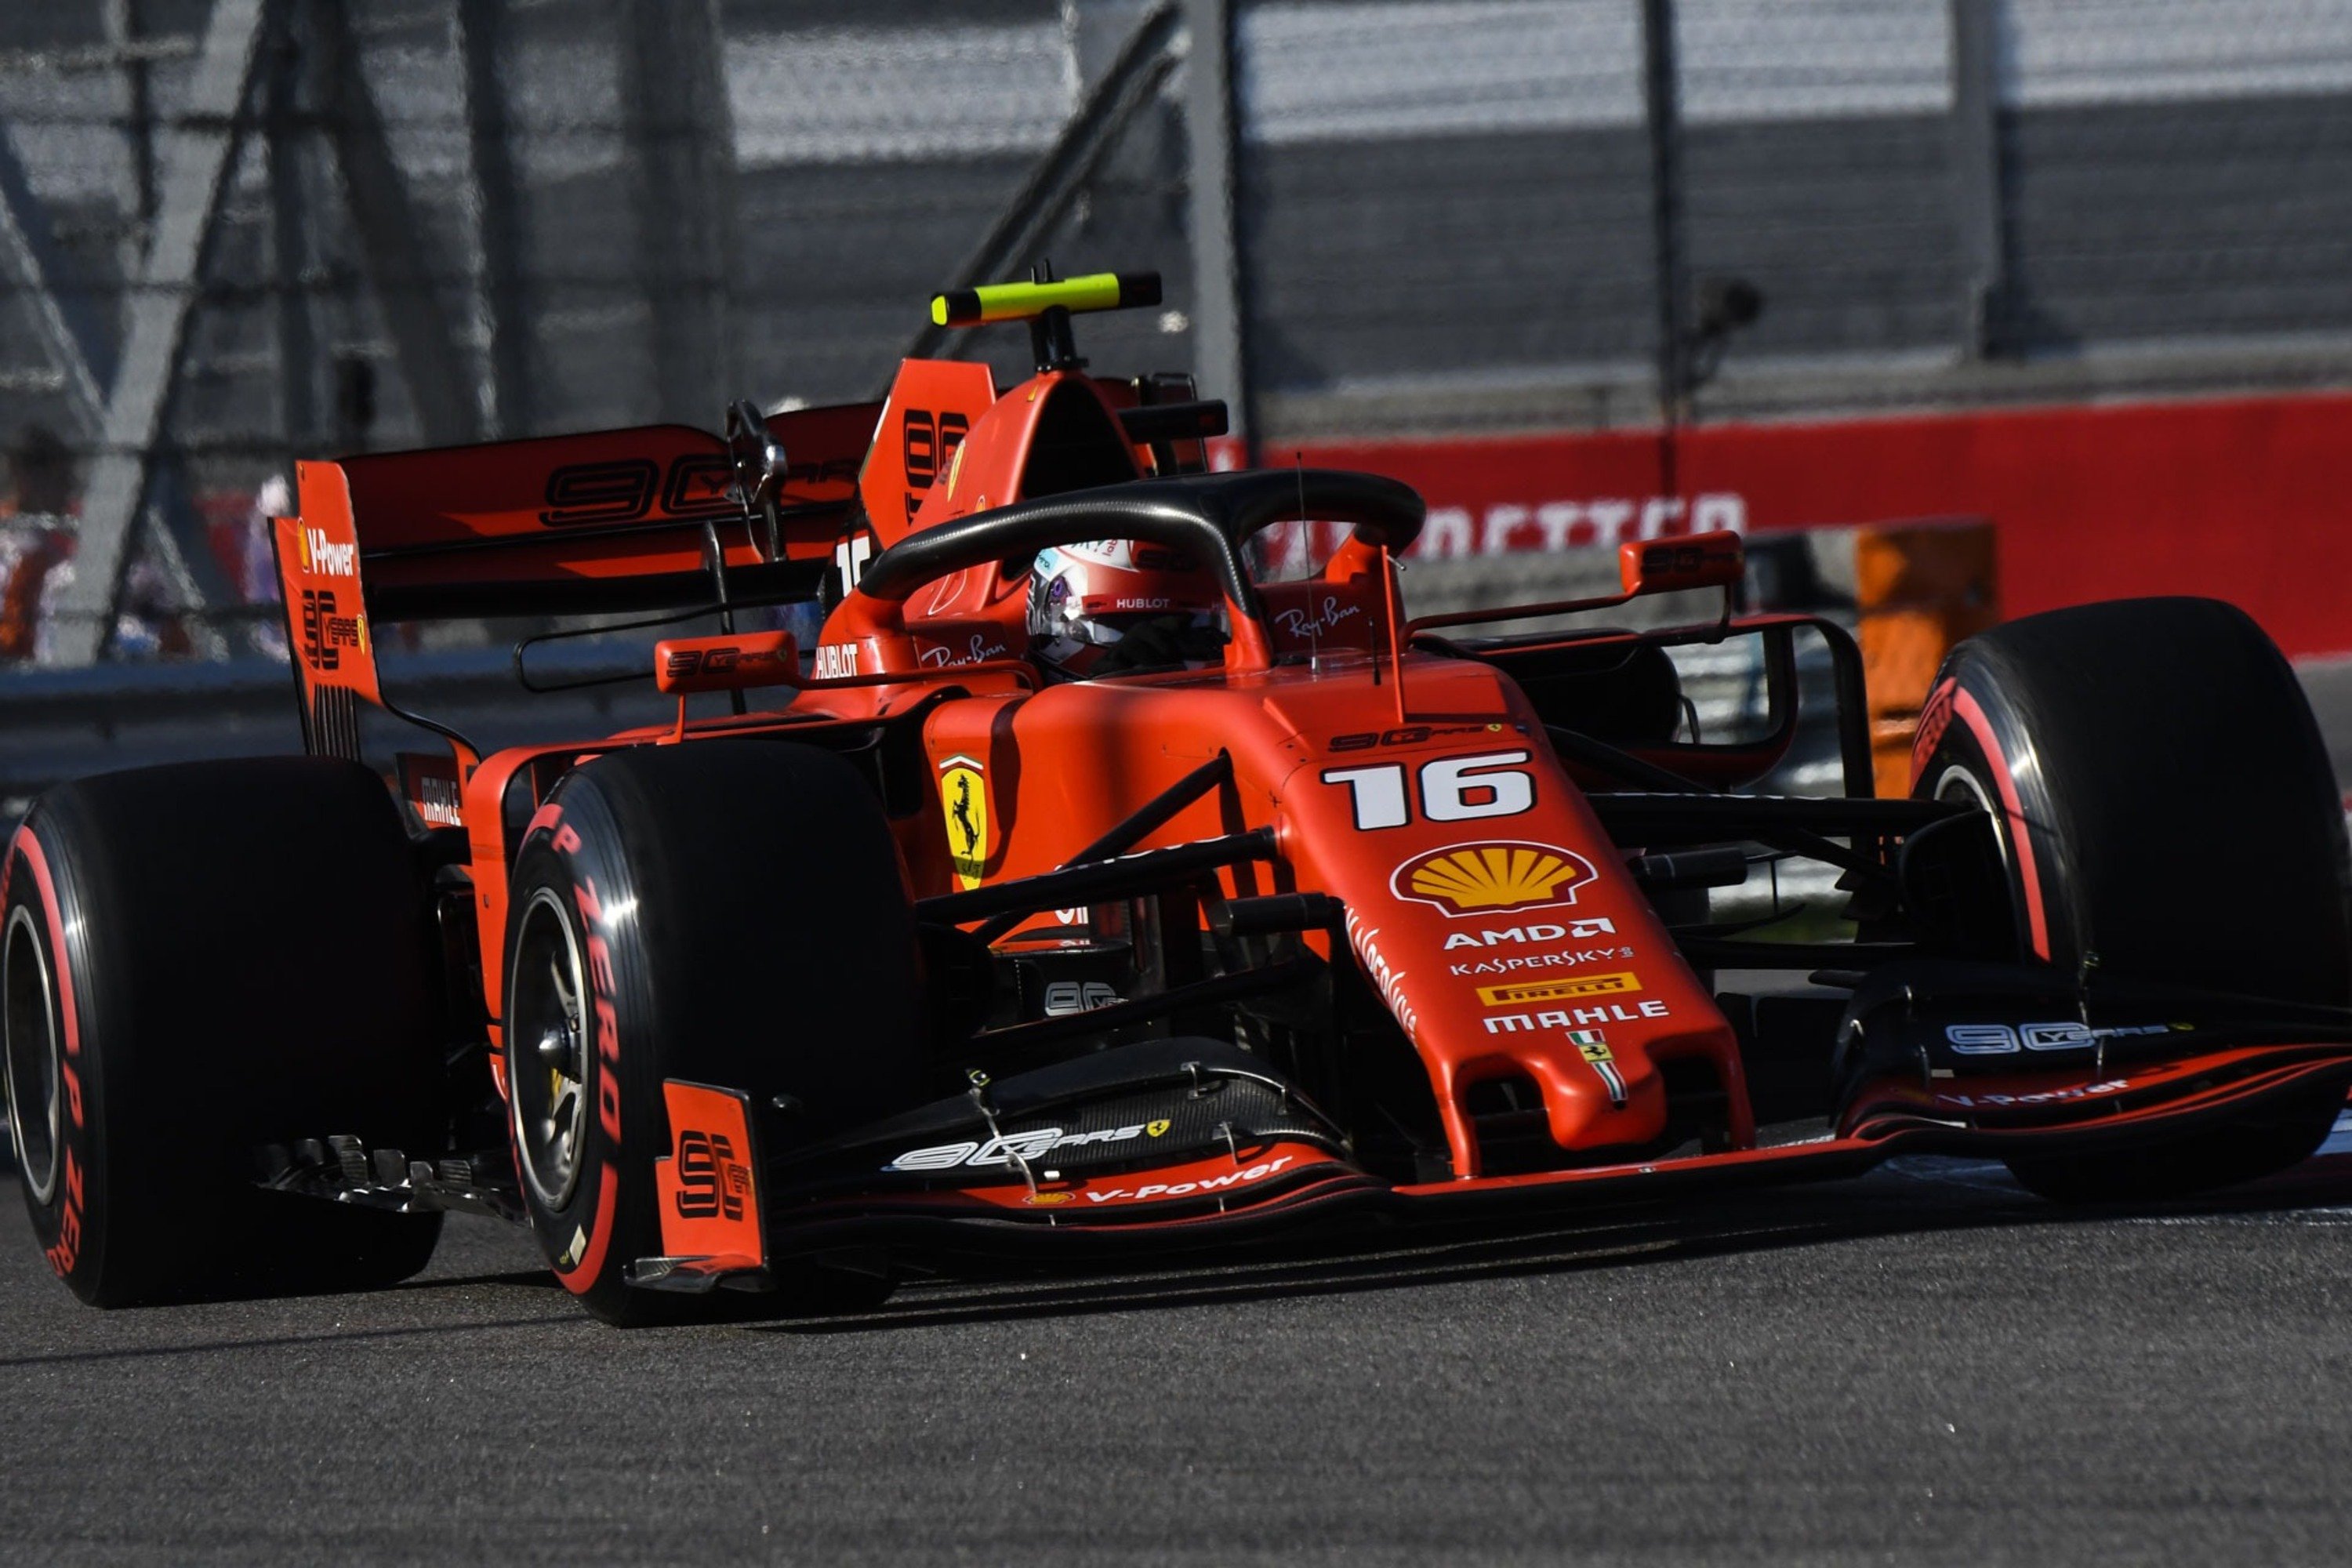 F1, GP Russia 2019: Ferrari, quante incongruenze a Sochi